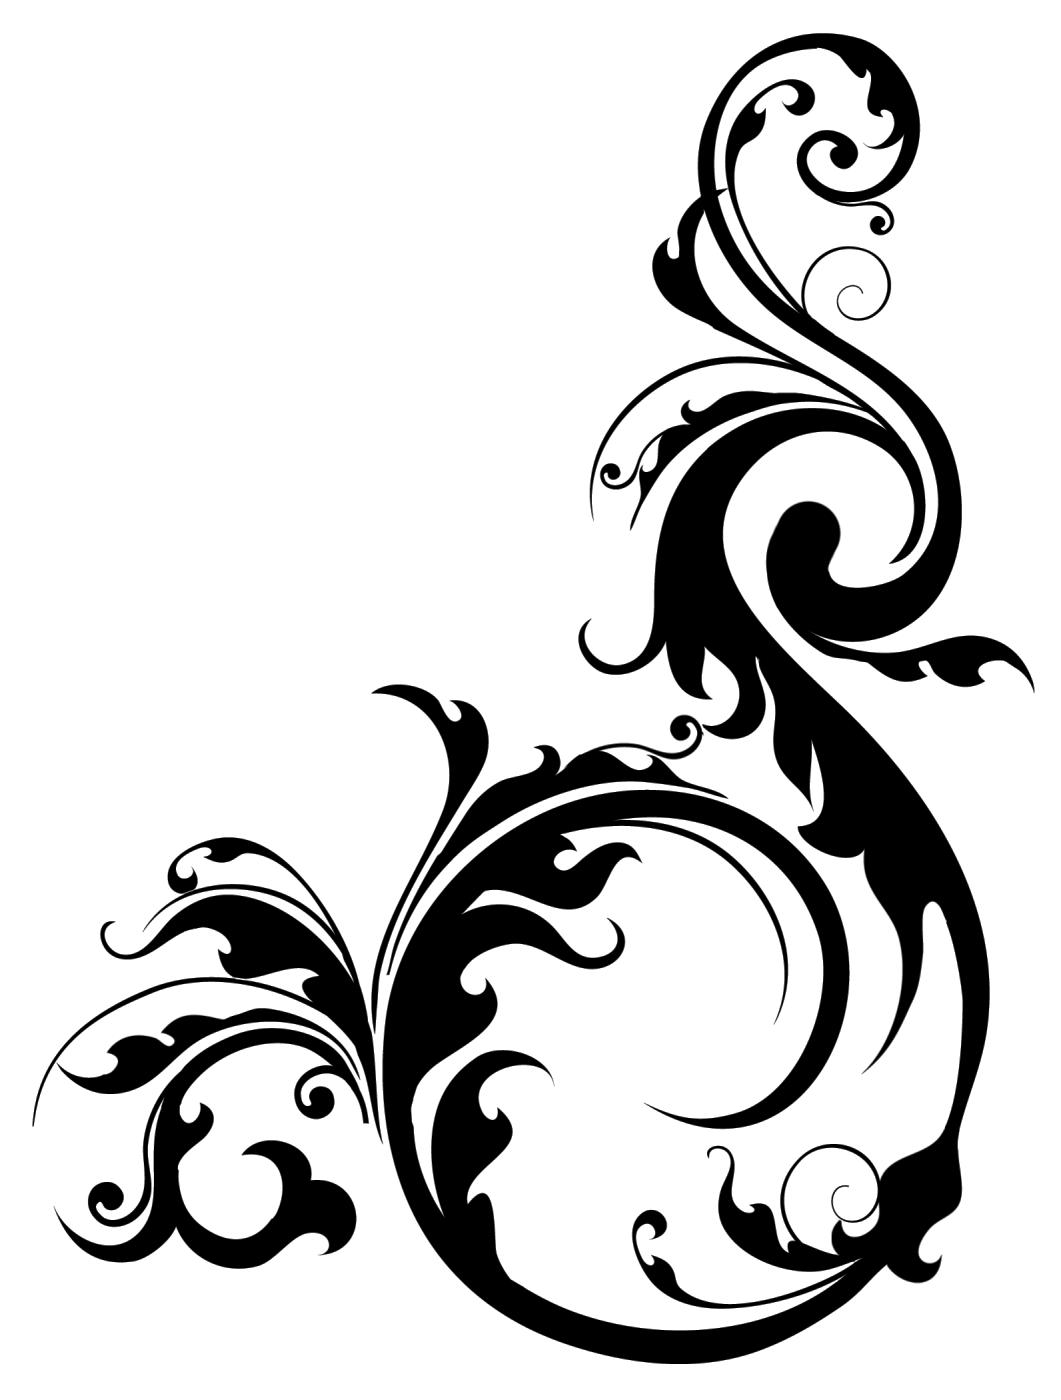  Gambar  Swirly Background Bunga  Vector  Desain Gambar  di 